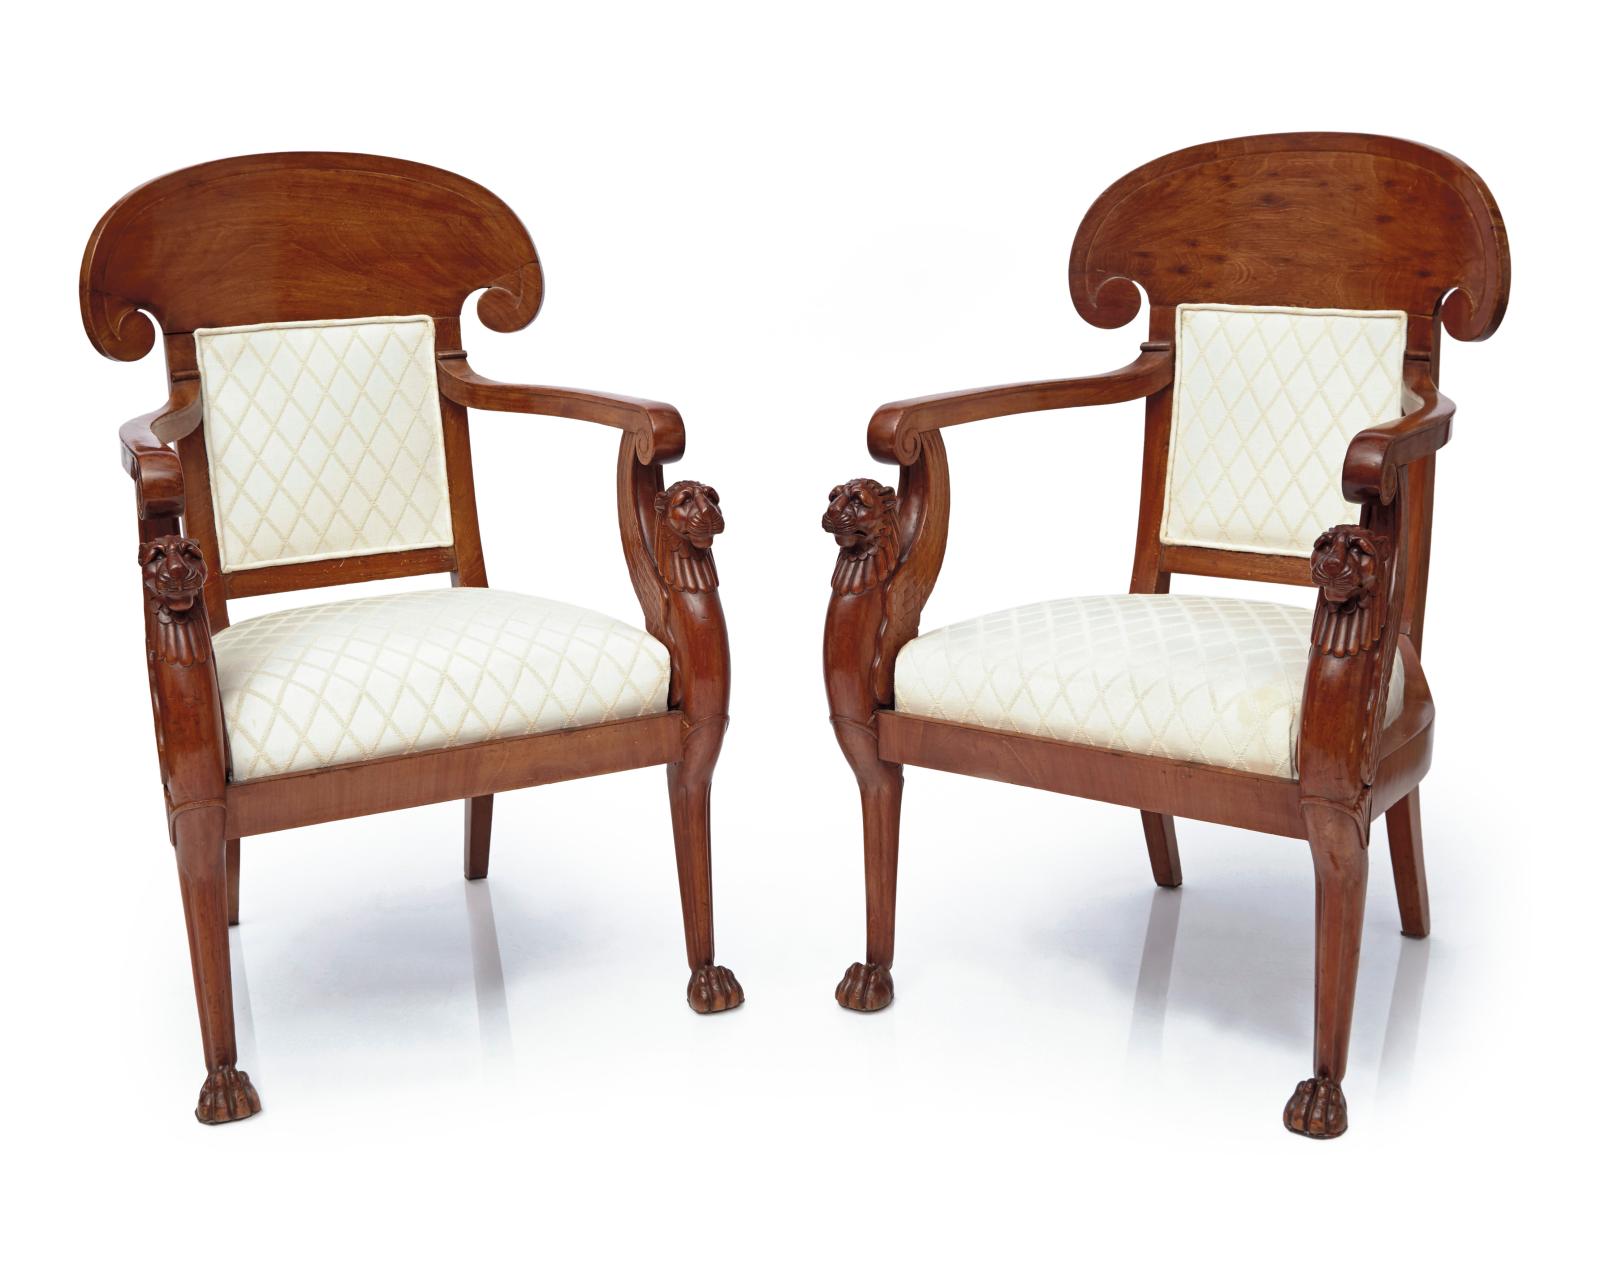 Époque Empire, paire de fauteuils d’apparat, estampillés «Jacob D R Meslée» (1803-1813), acajou et placage d’acajou sculpté et mouluré, 94,5 x 60,5 x 